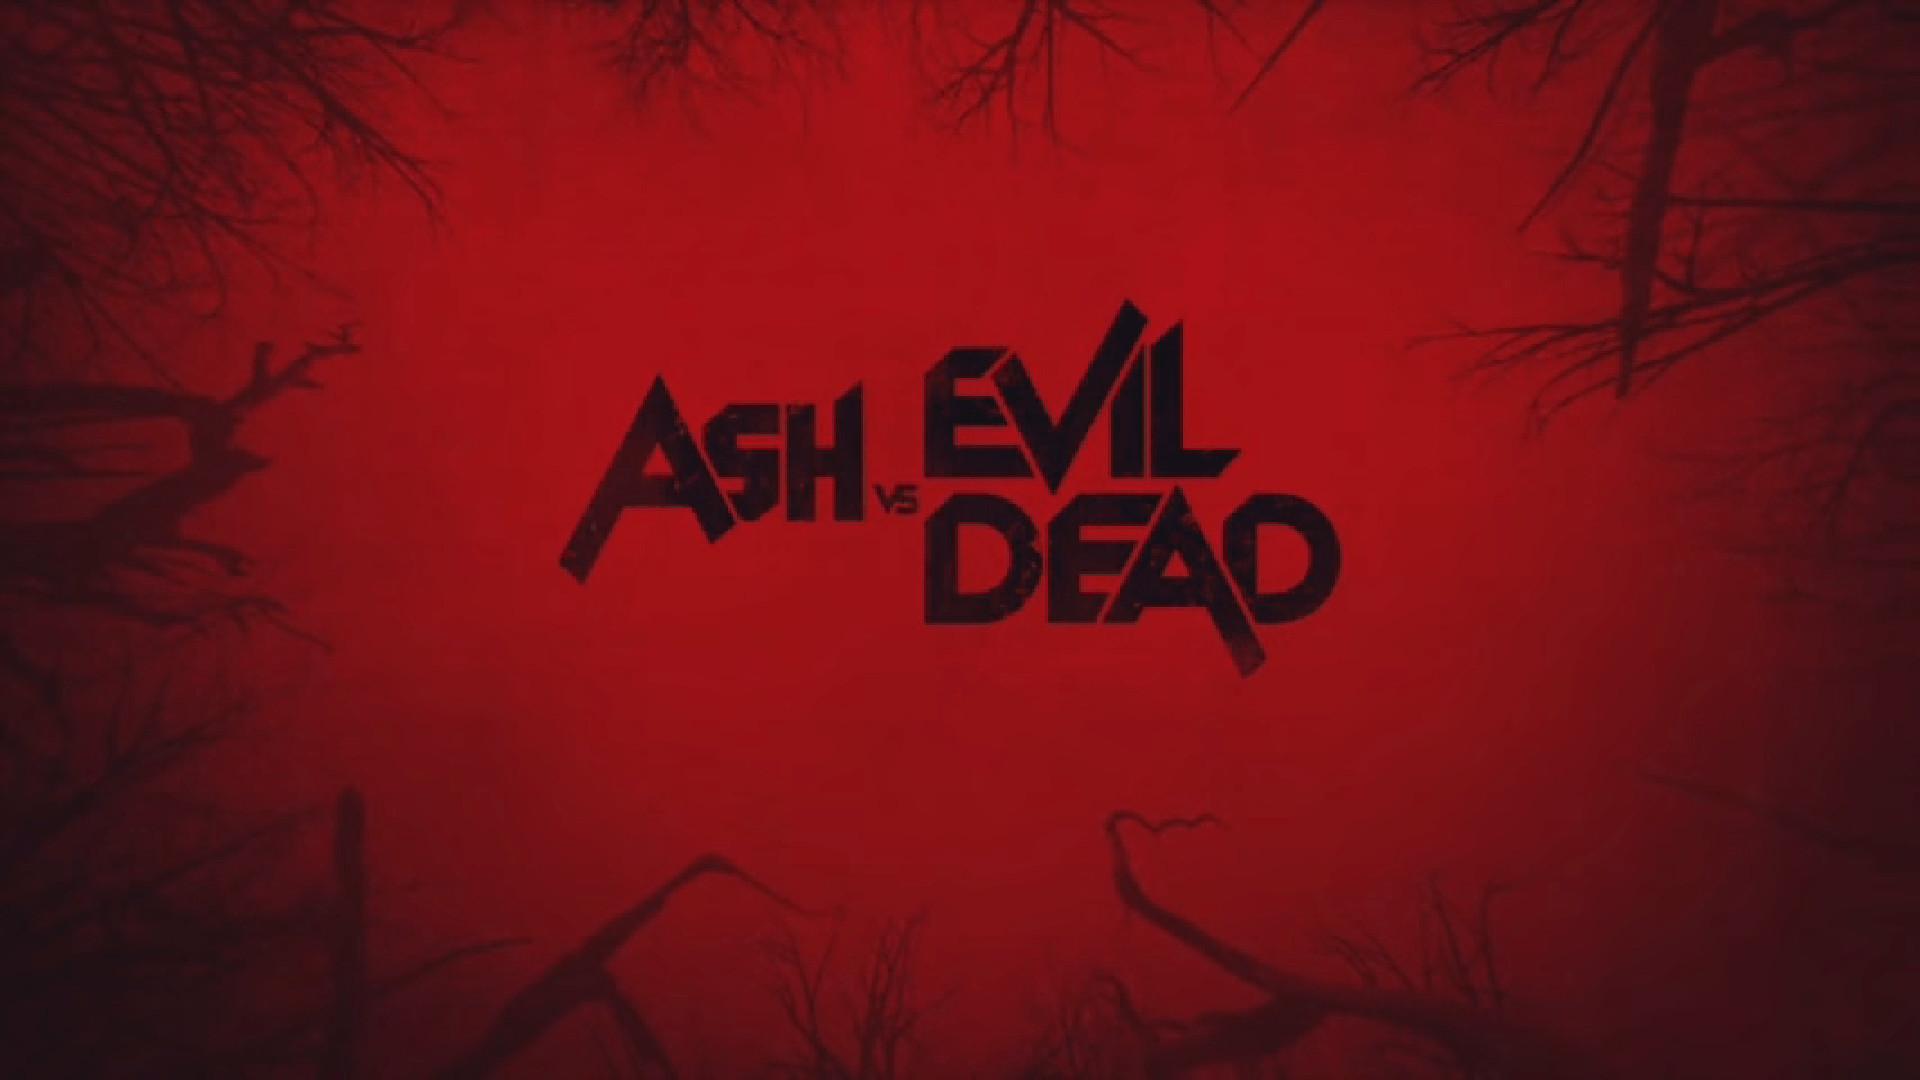 Ash vs Evil Dead Wallpaper